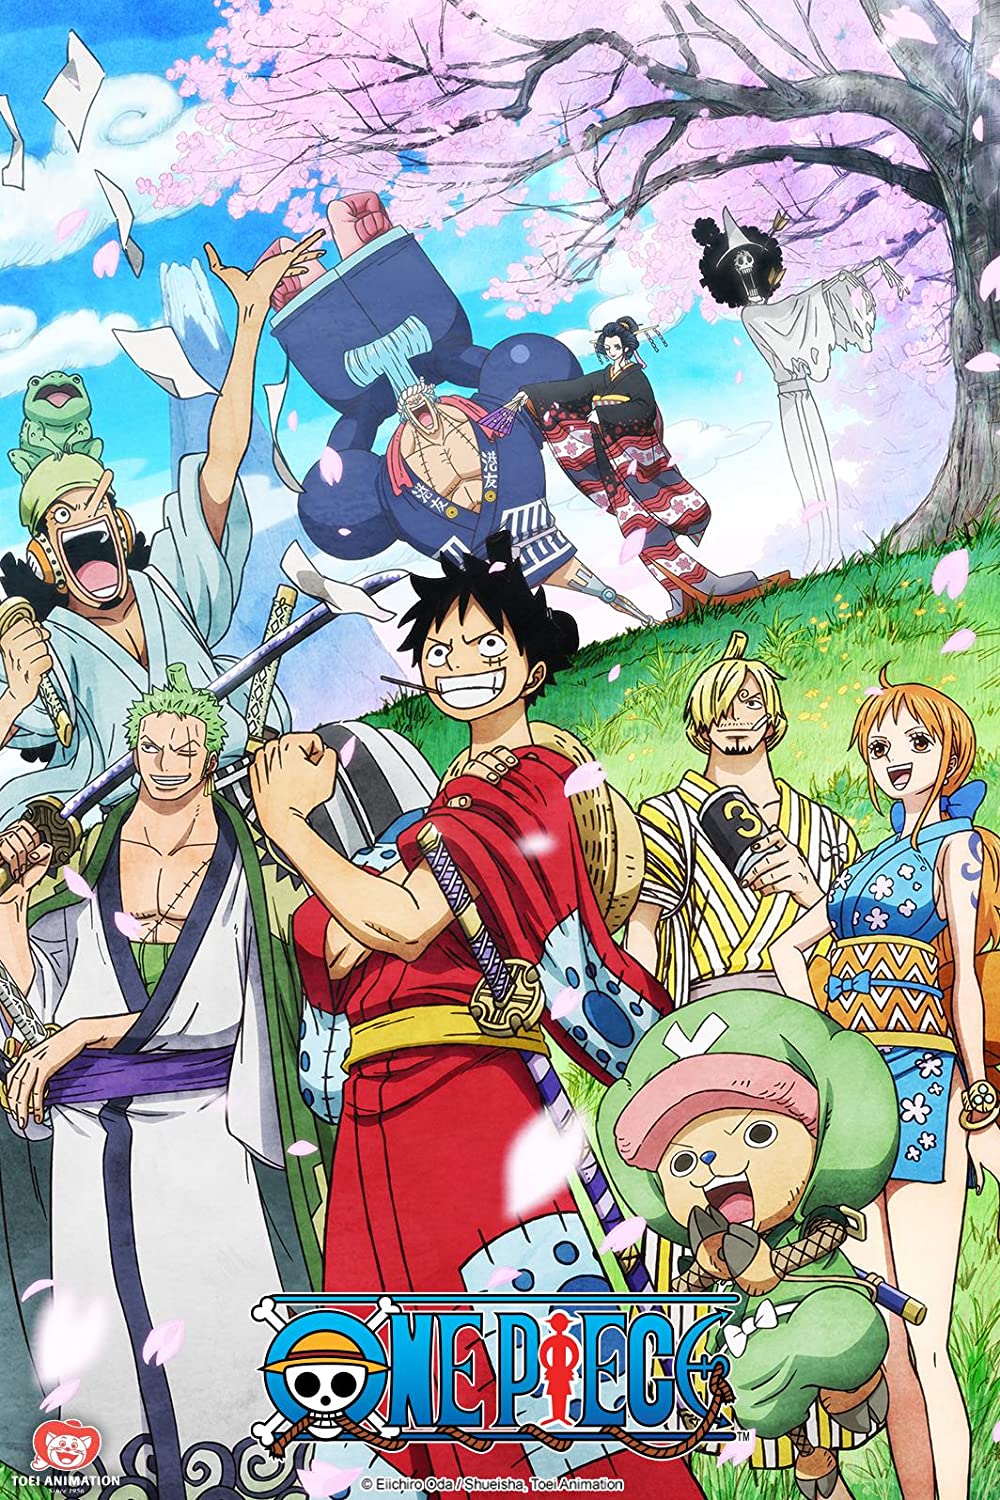 ดูหนังออนไลน์ฟรี One Piece Season 1 EP.1 วันพีช อิสท์บลู ซีซั่น 1 ตอนที่1